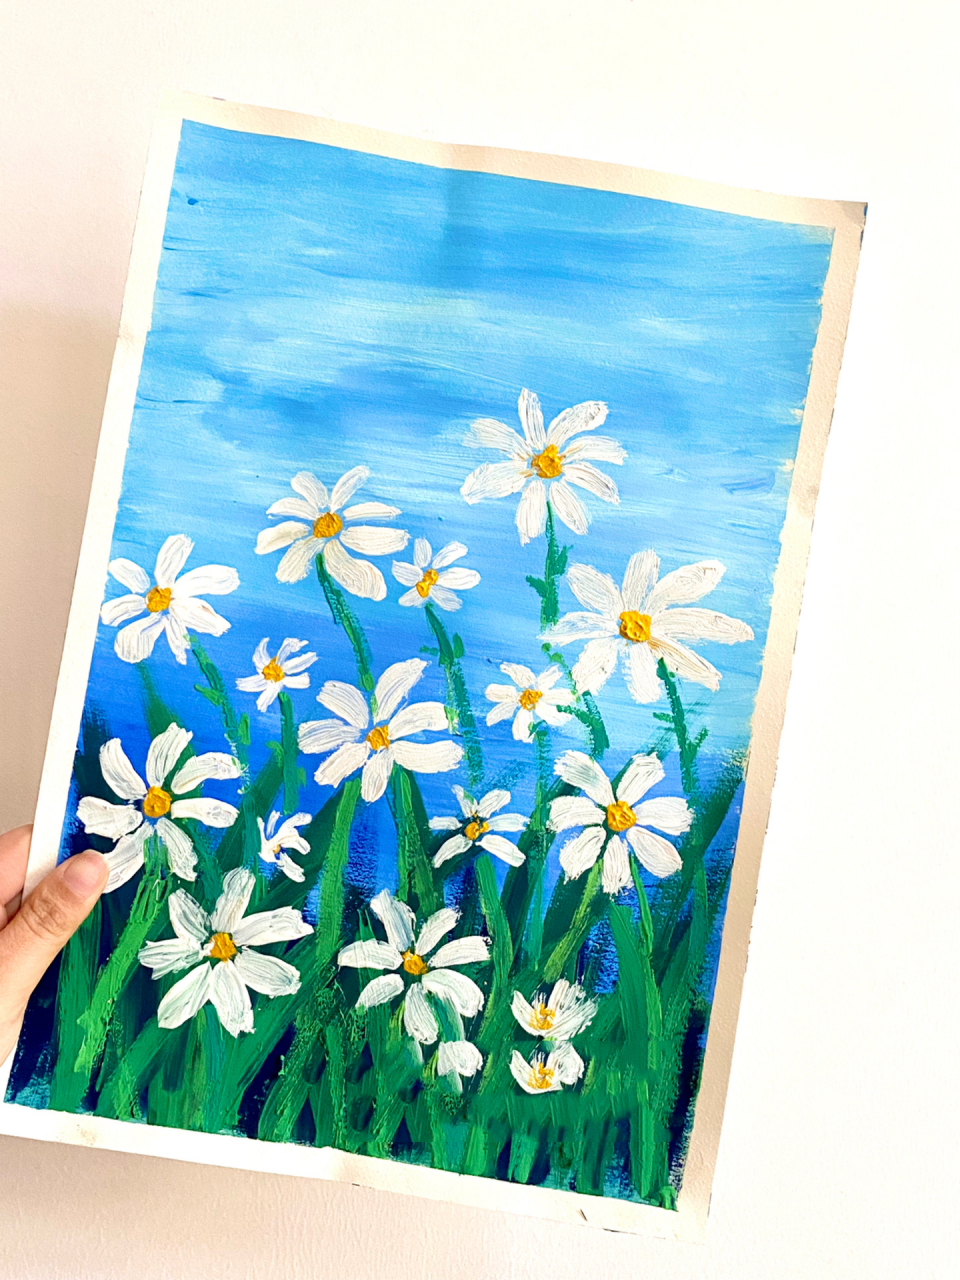 少儿创意美术——小雏菊儿童水粉画,附过程 很适合春暖花开的季节来上